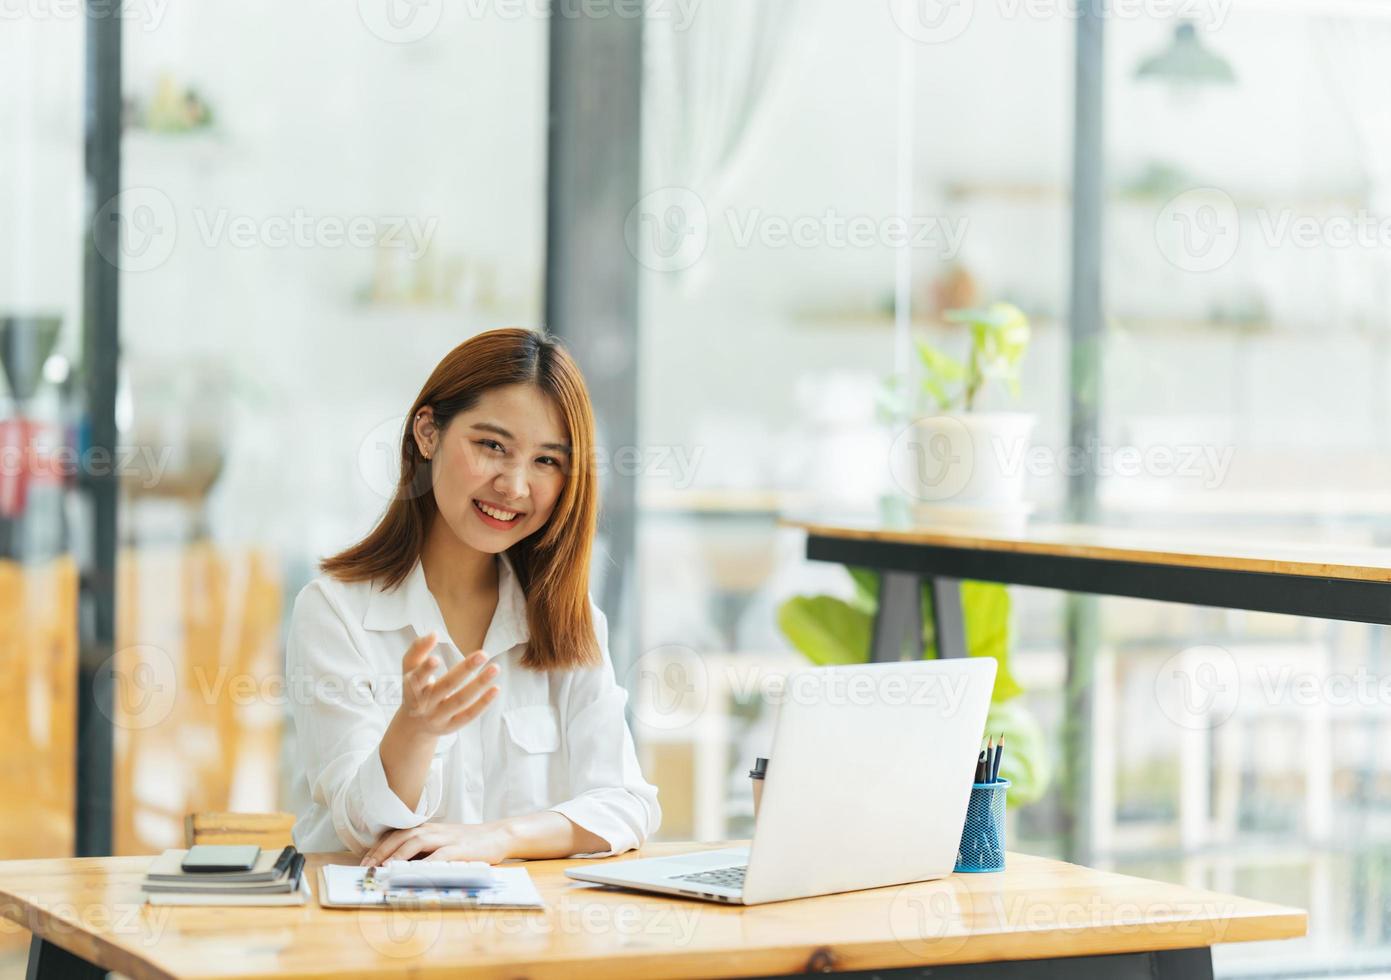 réunion en ligne. heureuse jeune femme utilisant un ordinateur portable pour une conférence virtuelle, ayant un appel vidéo à la maison. joyeuse femme asiatique communiquant avec des collègues, des amis à distance. photo